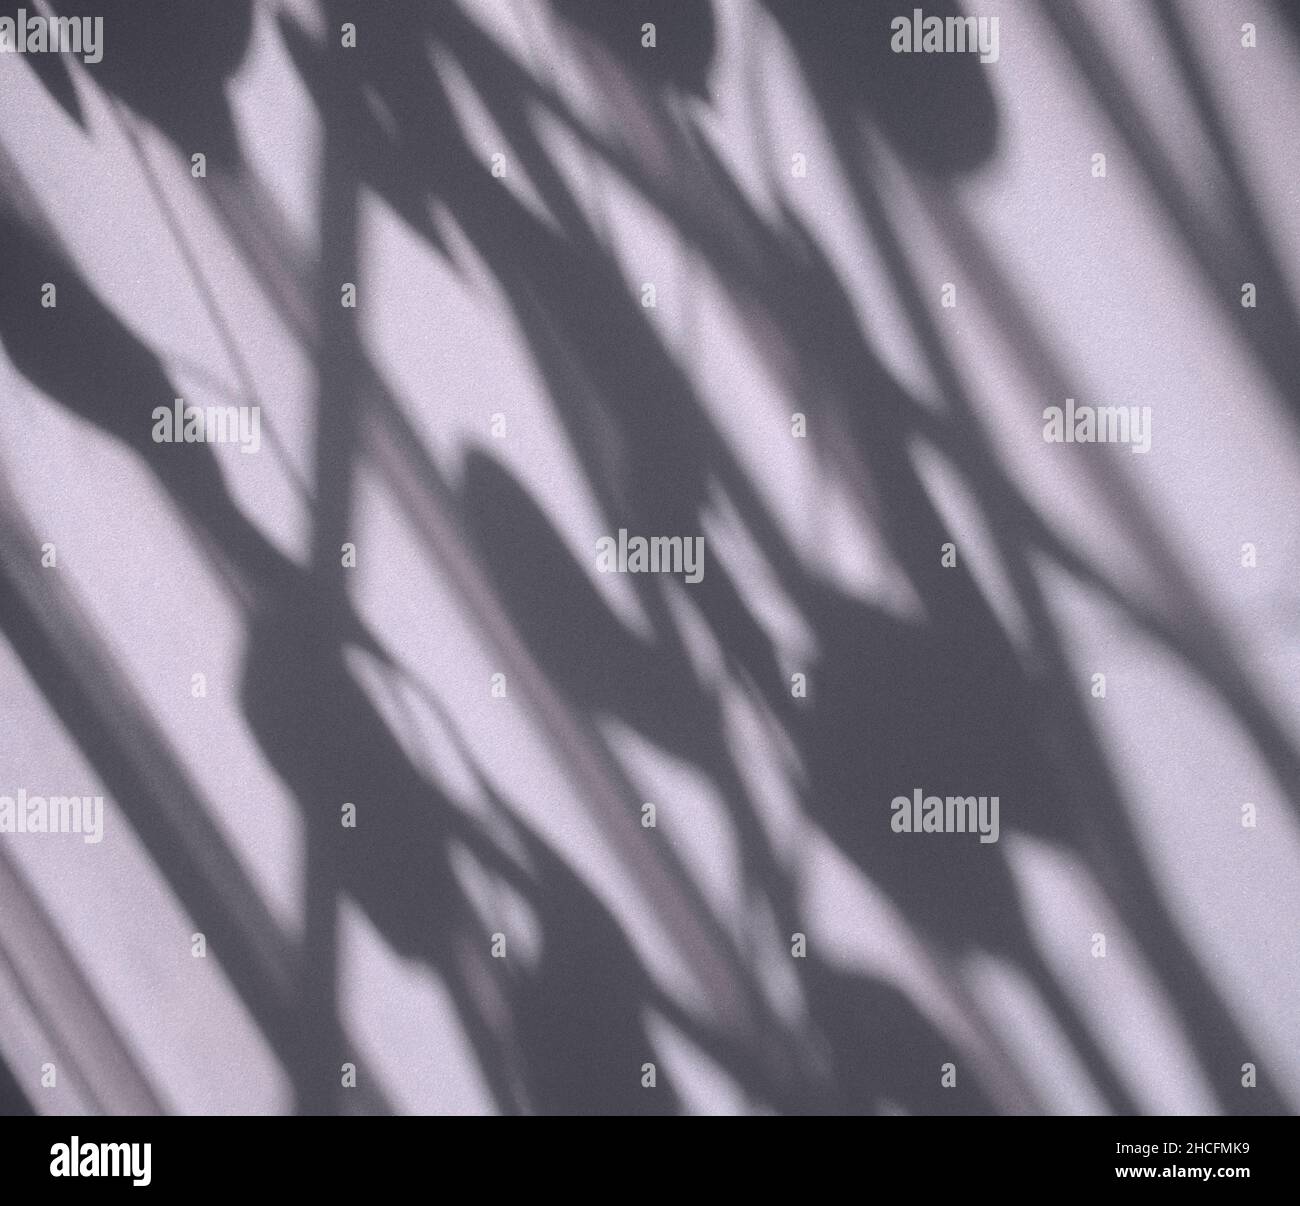 Schattenüberlagerung mit schwarzem und weißem Hintergrund. Fenster und Pflanzen Blätter Textur Schatten abstrakt. Für den Hintergrund, die Produktanzeige, Überlagerungen. Stockfoto